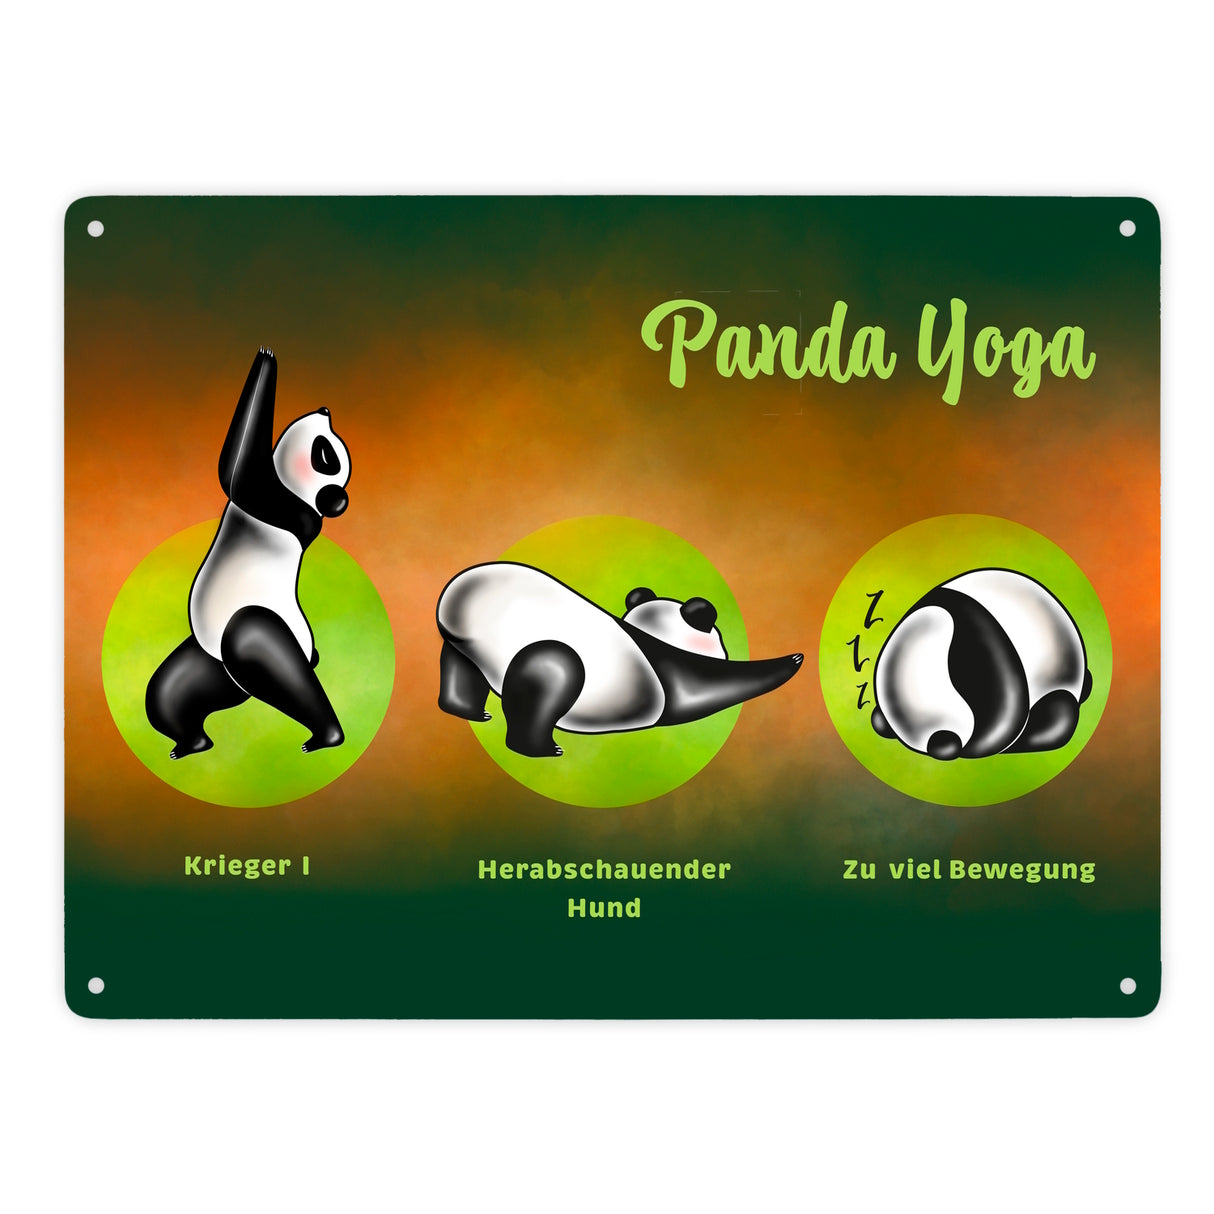 Panda Yoga Metallschild mit Yoga Übungen und Pandabären